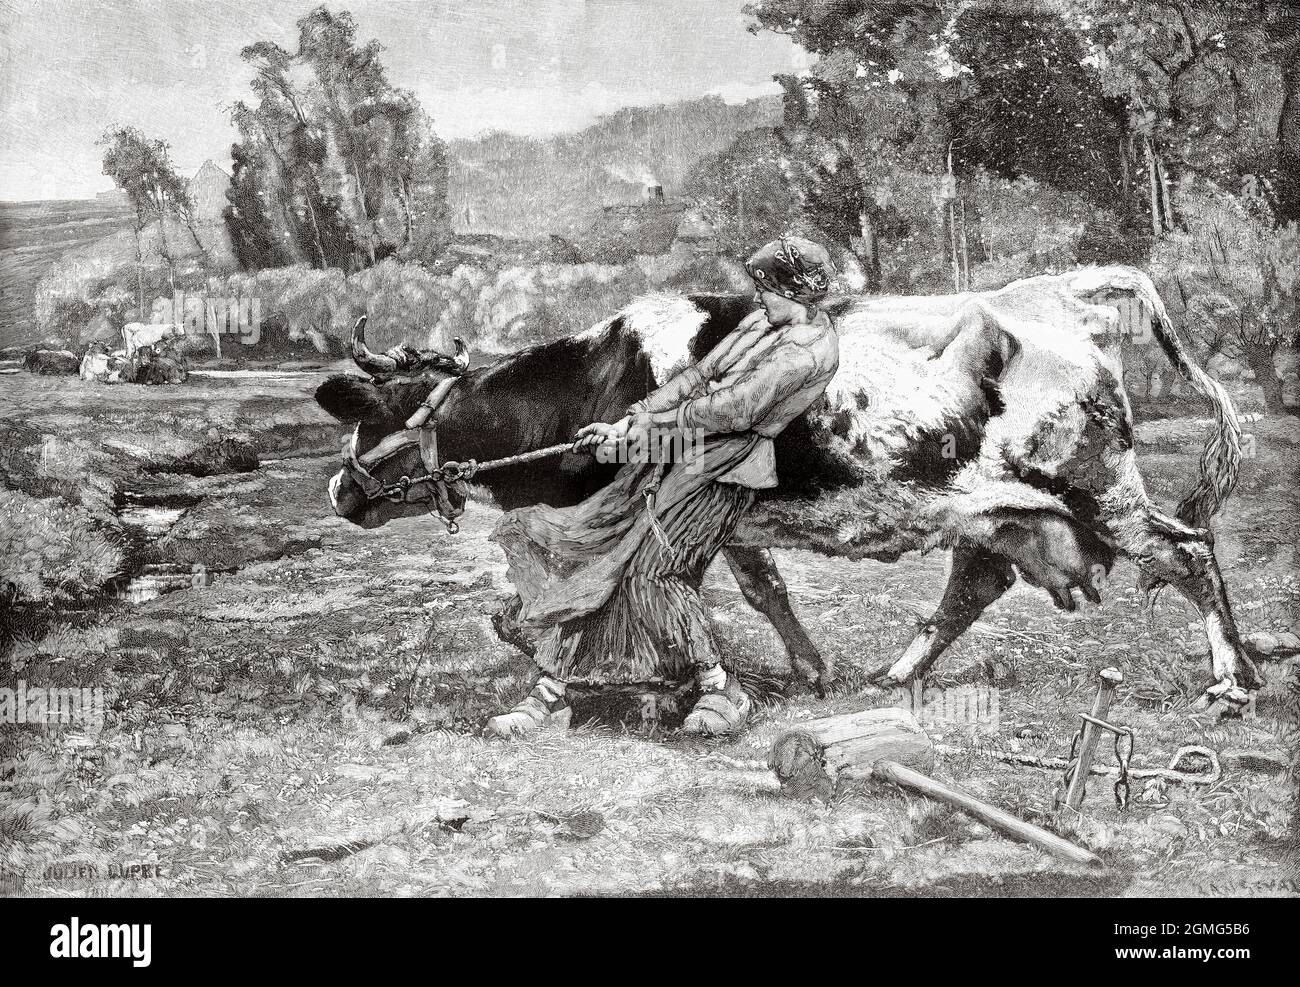 Sur les Prairies. Une femme de campagne s'occupe d'une vache, peinture de Julien Dupré (1851-1910) est un peintre français. Ancienne illustration gravée du XIXe siècle de la Ilustración Artística 1882 Banque D'Images